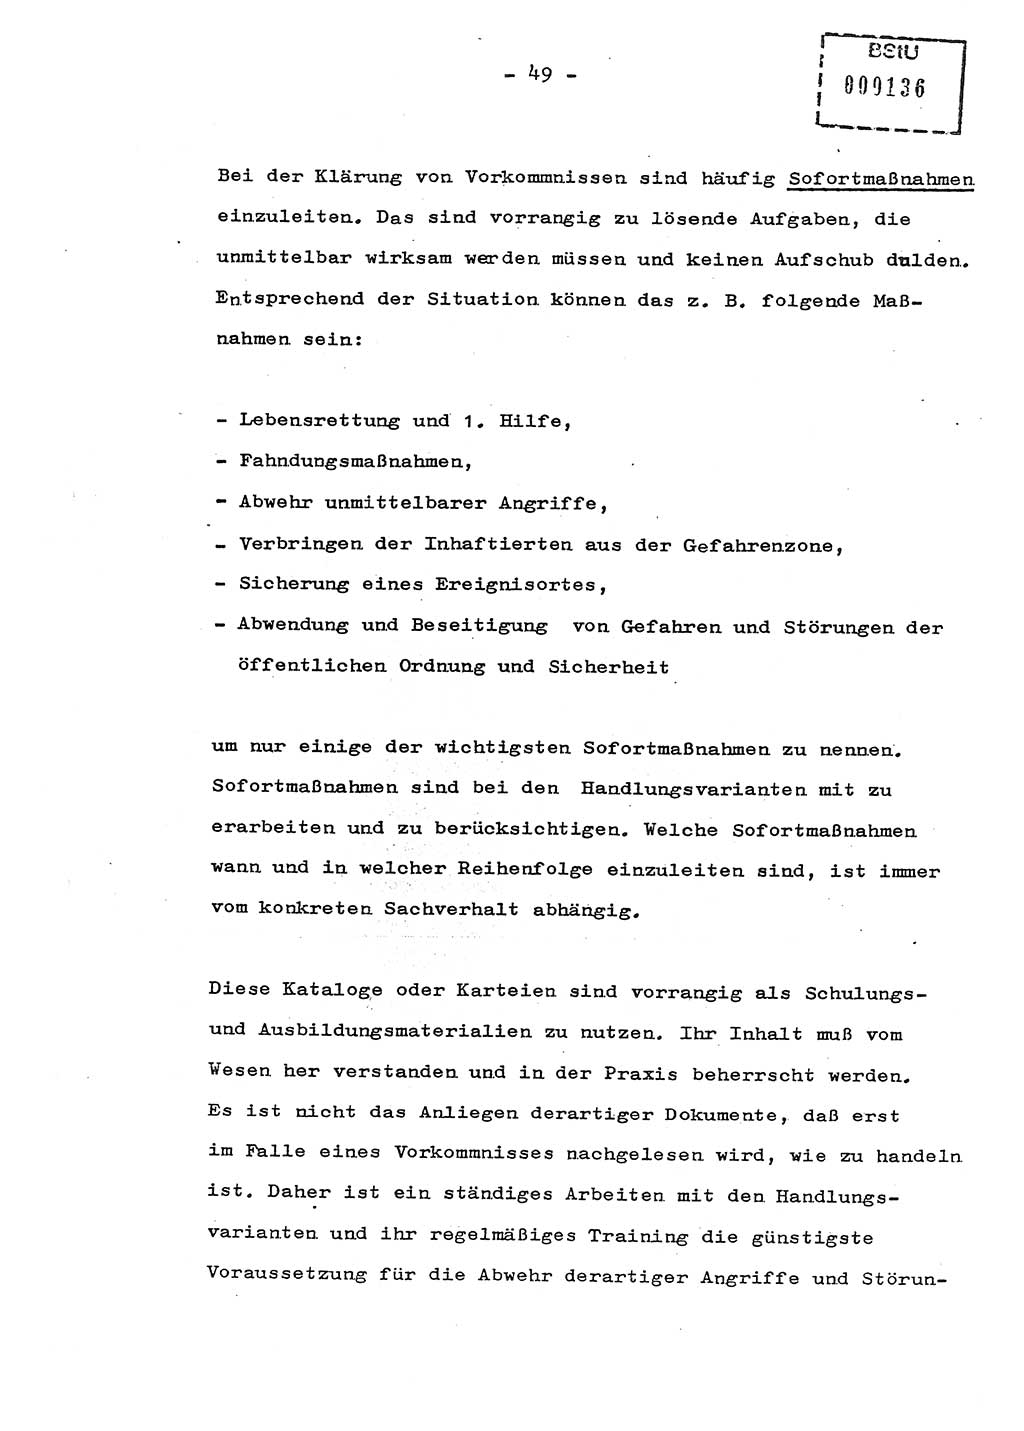 Schulungsmaterial Exemplar-Nr.: 8, Ministerium für Staatssicherheit [Deutsche Demokratische Republik (DDR)], Abteilung (Abt.) ⅩⅣ, Berlin 1987, Seite 49 (Sch.-Mat. Expl. 8 MfS DDR Abt. ⅩⅣ /87 1987, S. 49)